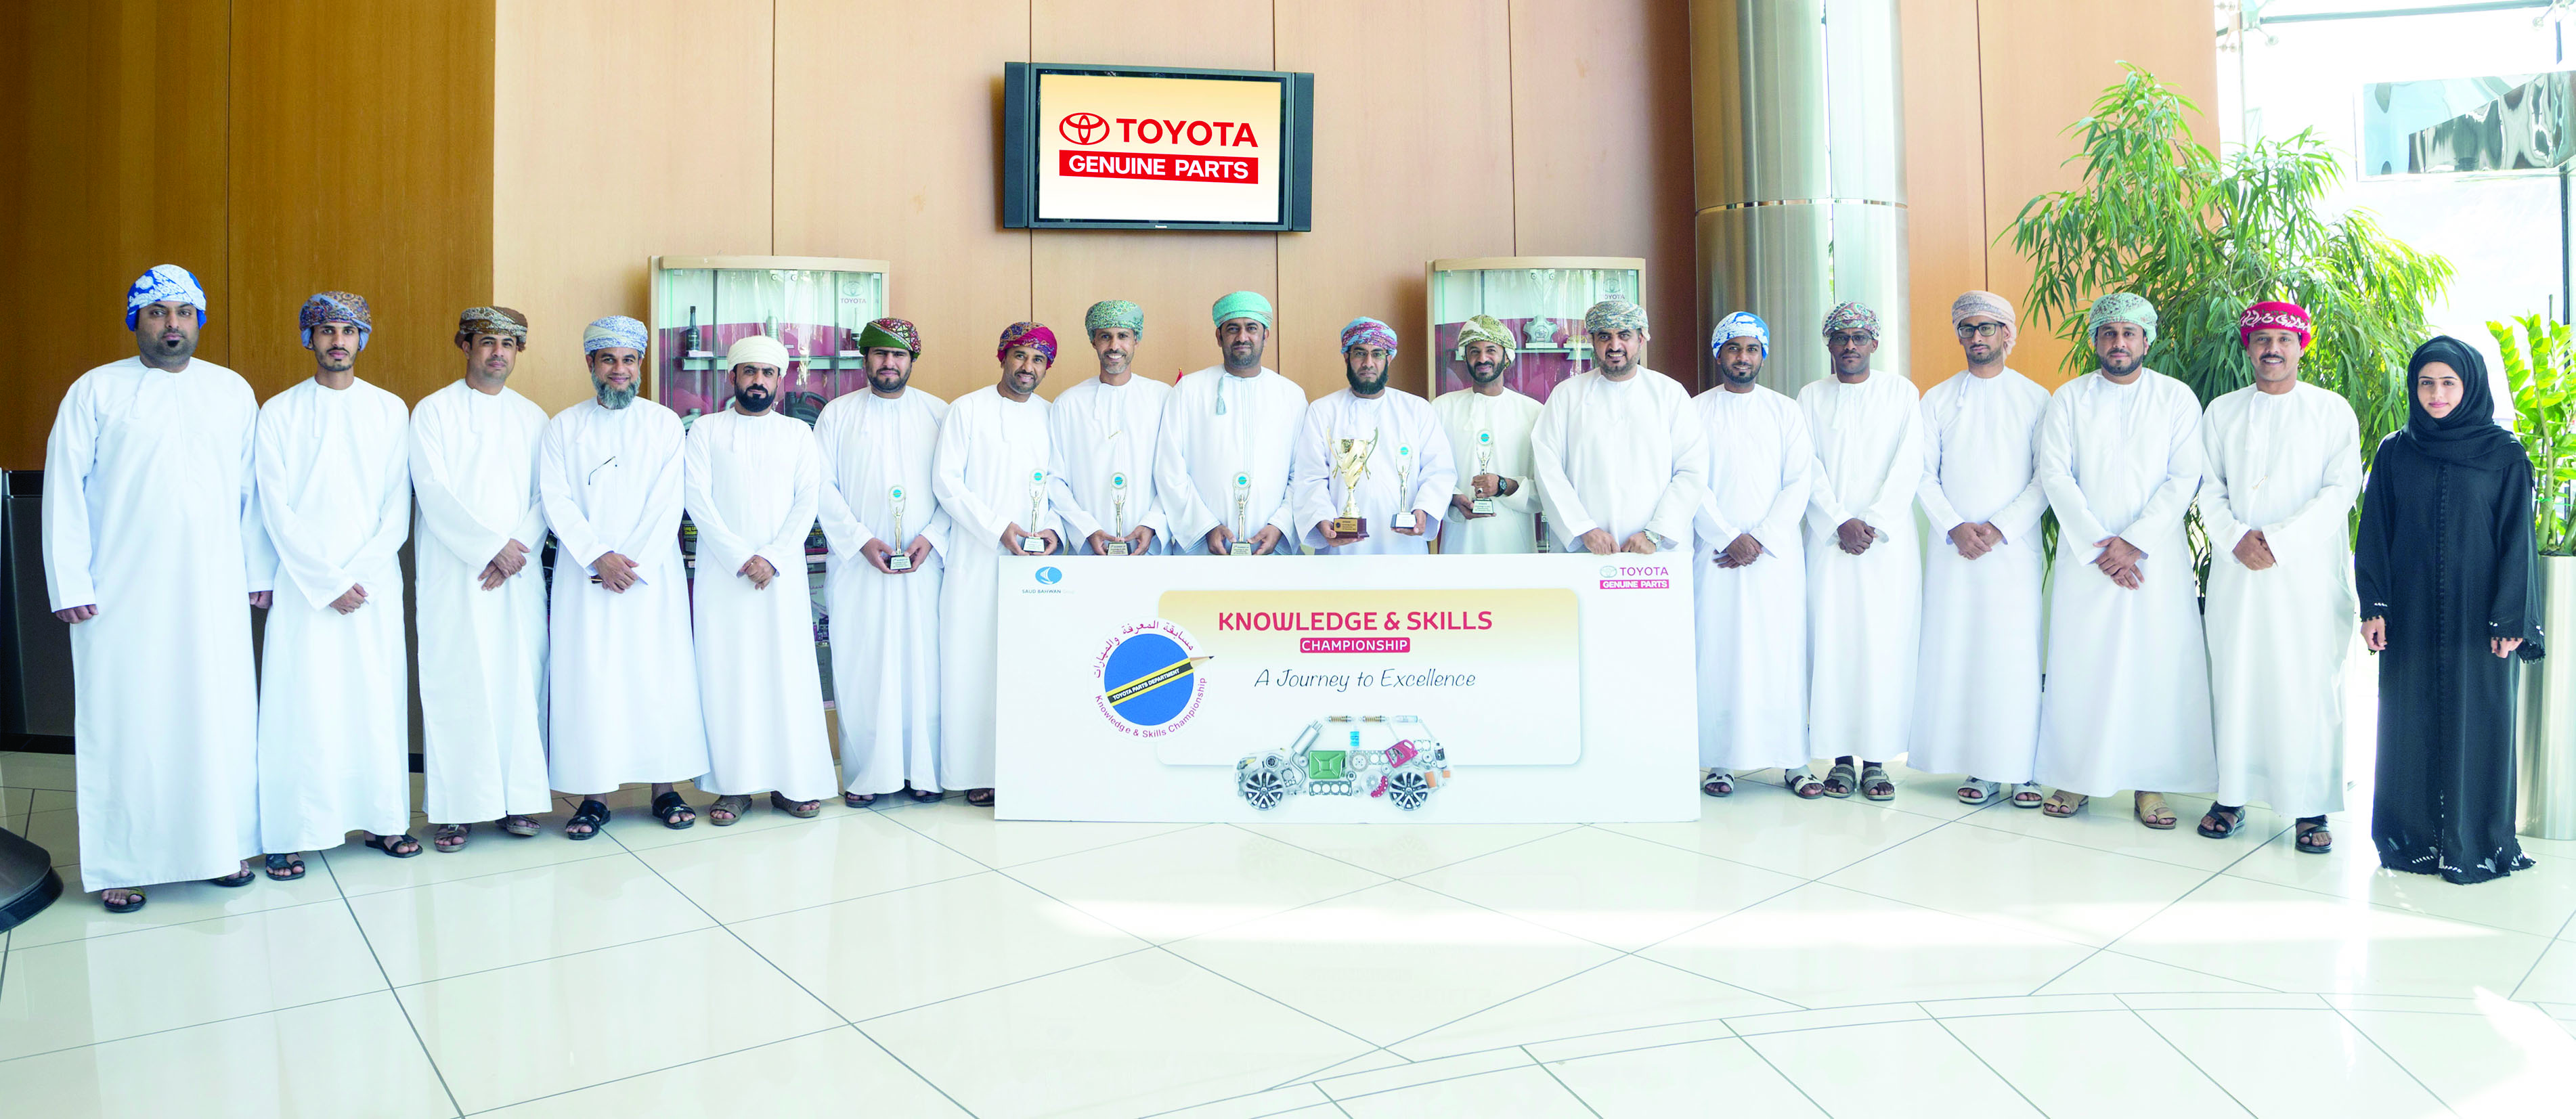 مجموعة سعود بهوان تحتفل بتخريج موظفي مبيعات عُمانيين